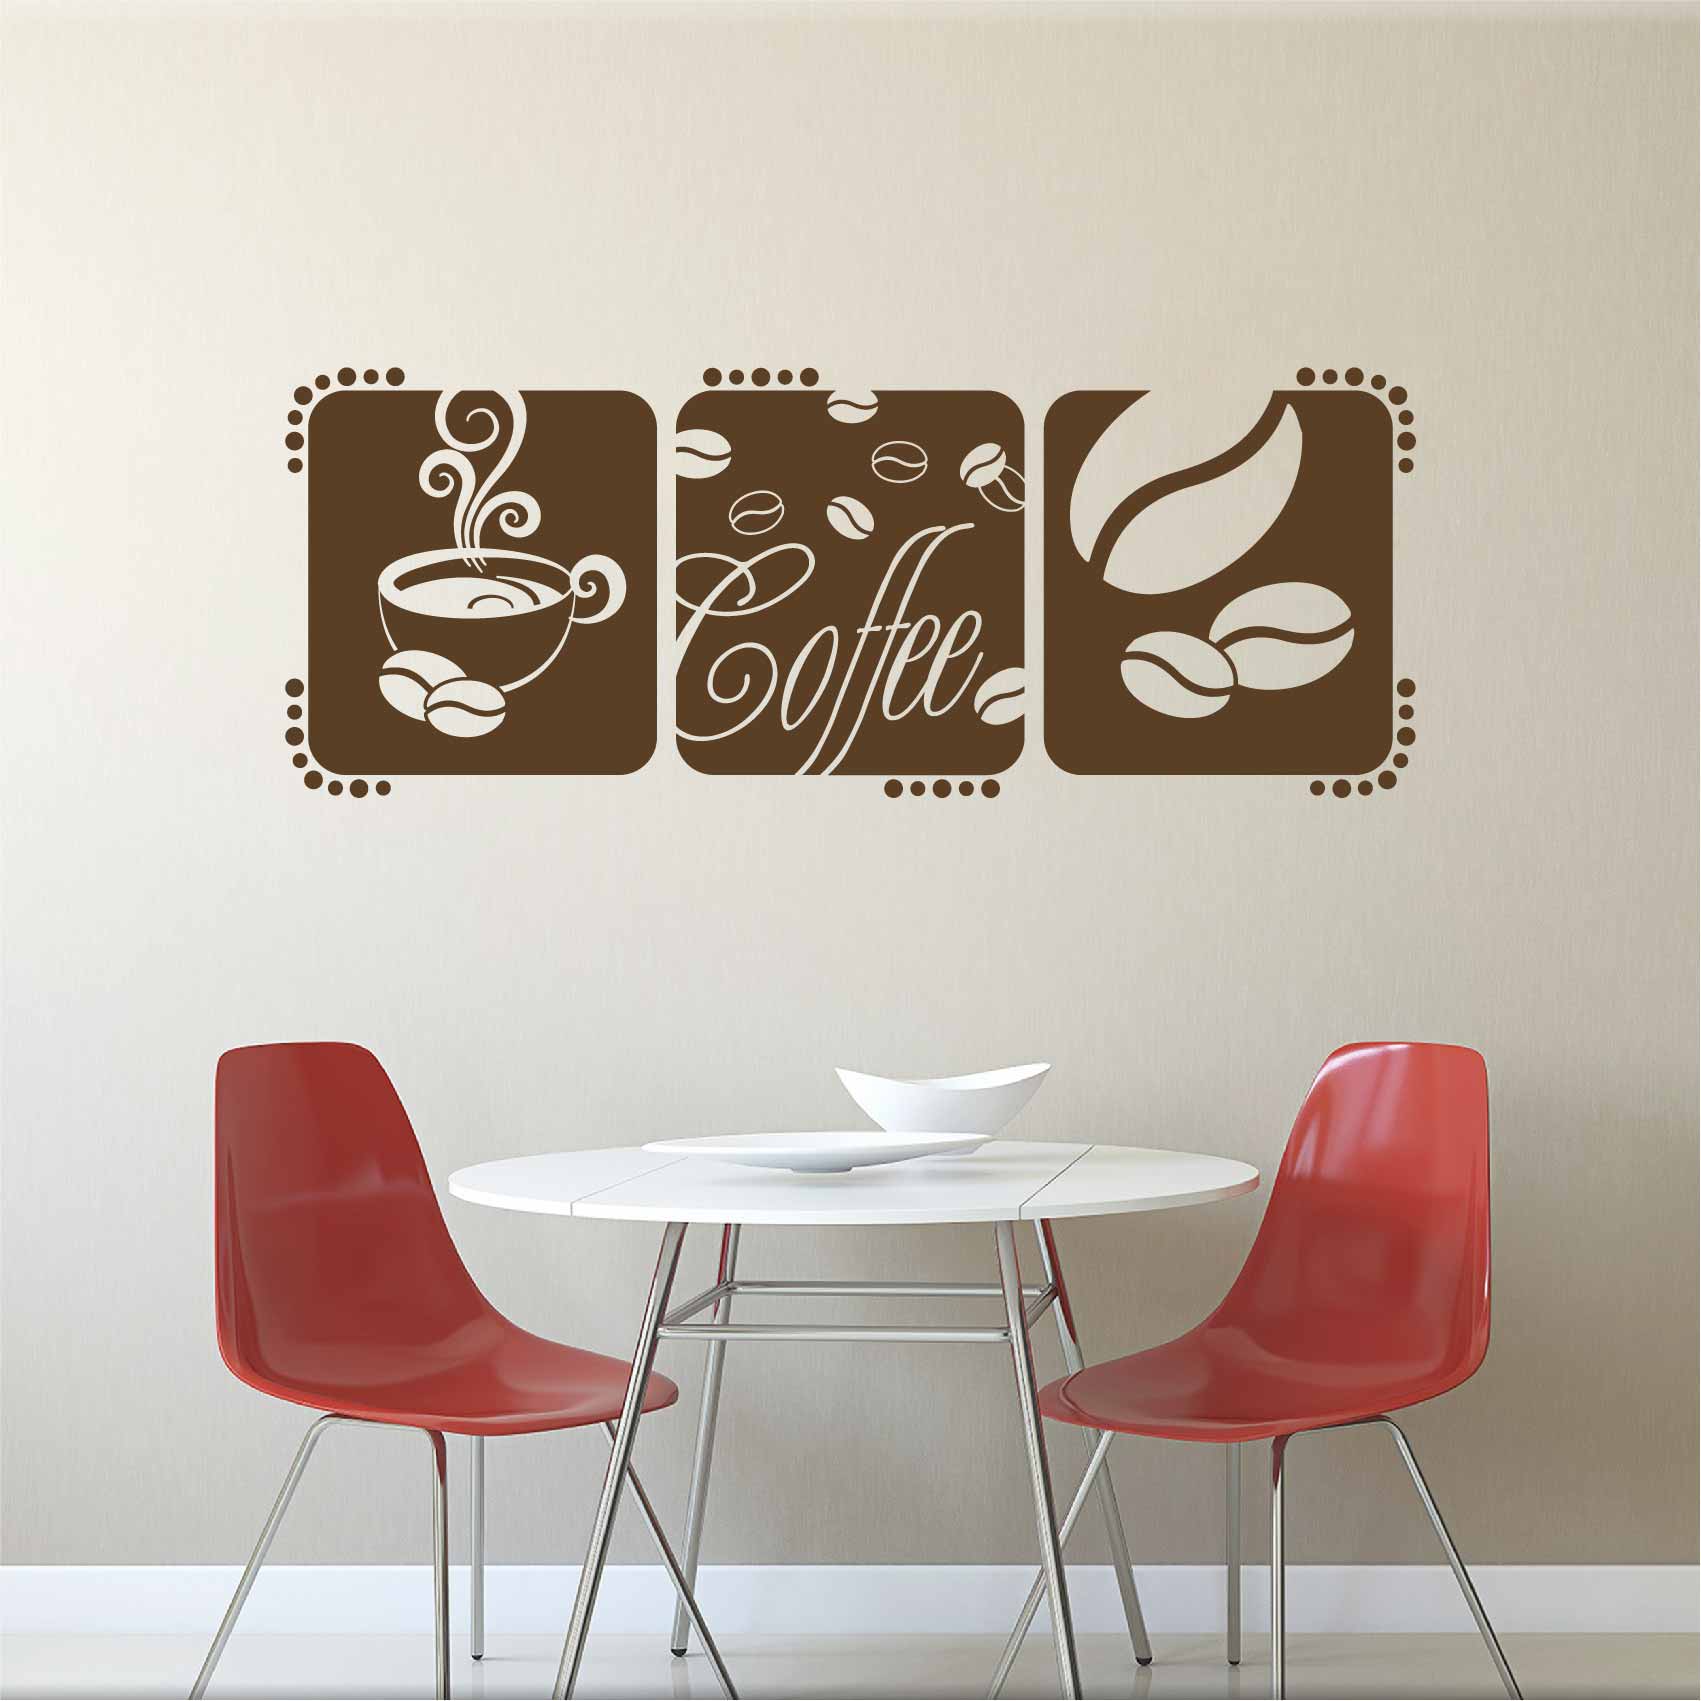 stickers-coffee-ref27cafe-autocollant-muraux-café-sticker-mural-cuisine-cafe-deco-salon-table